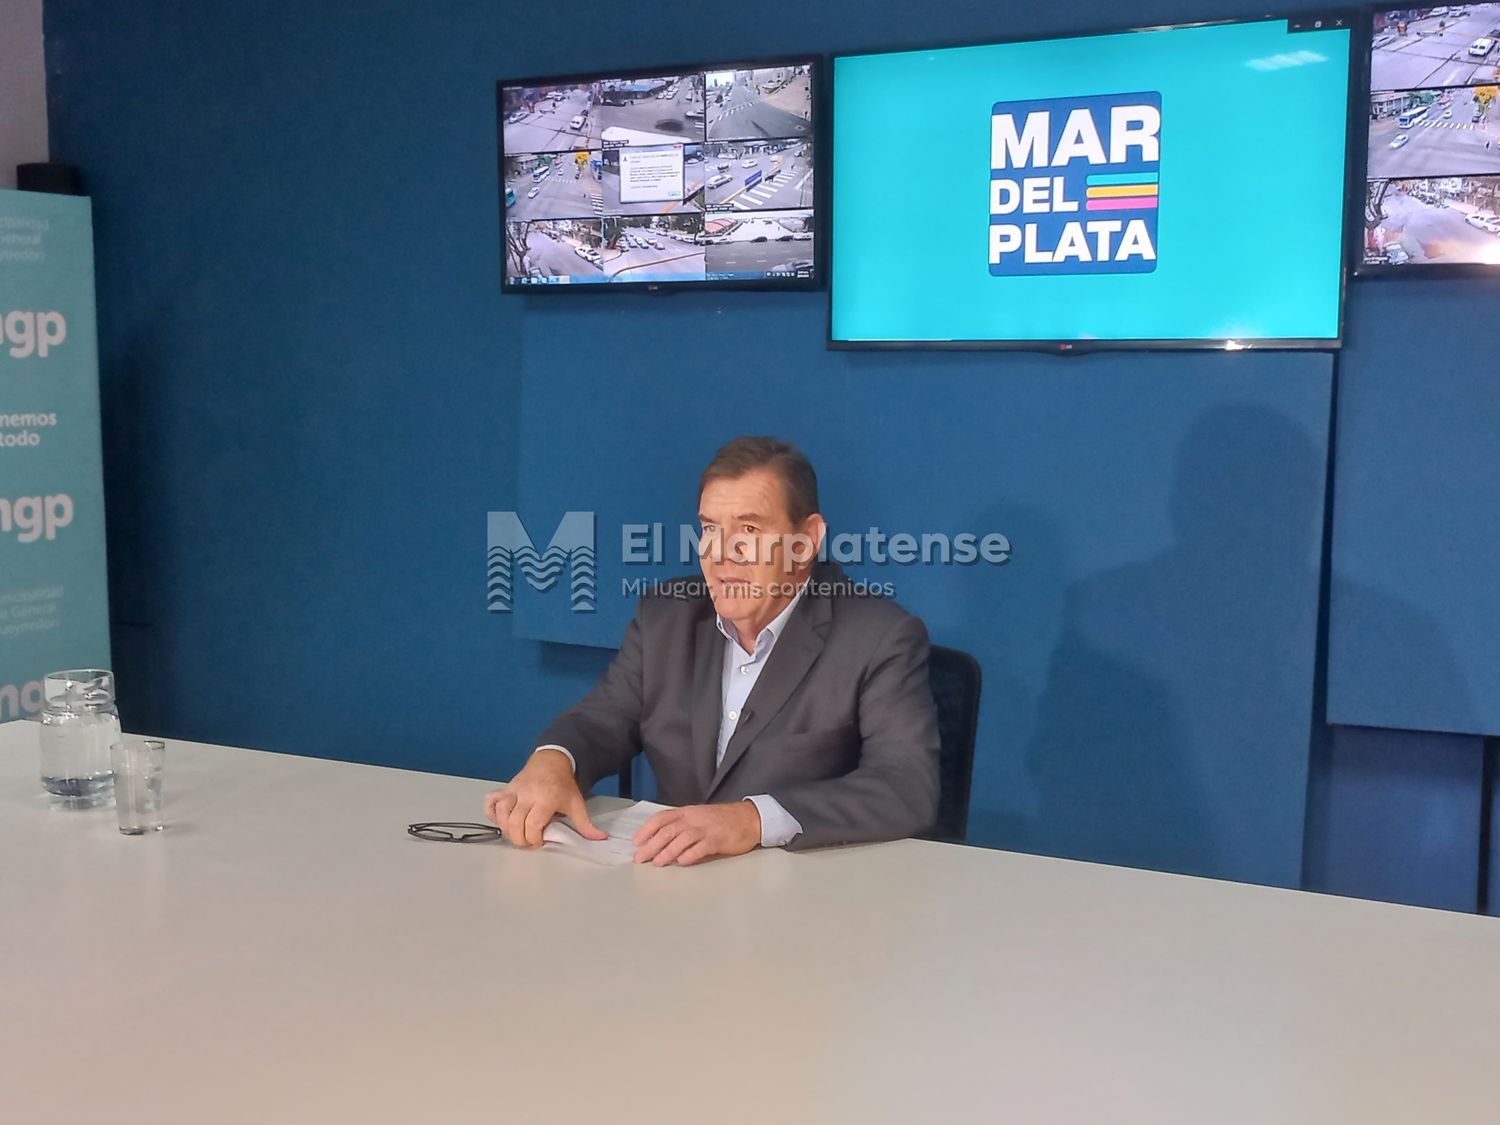 El intendente Guillermo Montenegro, junto a su equipo de gobierno, brindó una conferencia de prensa